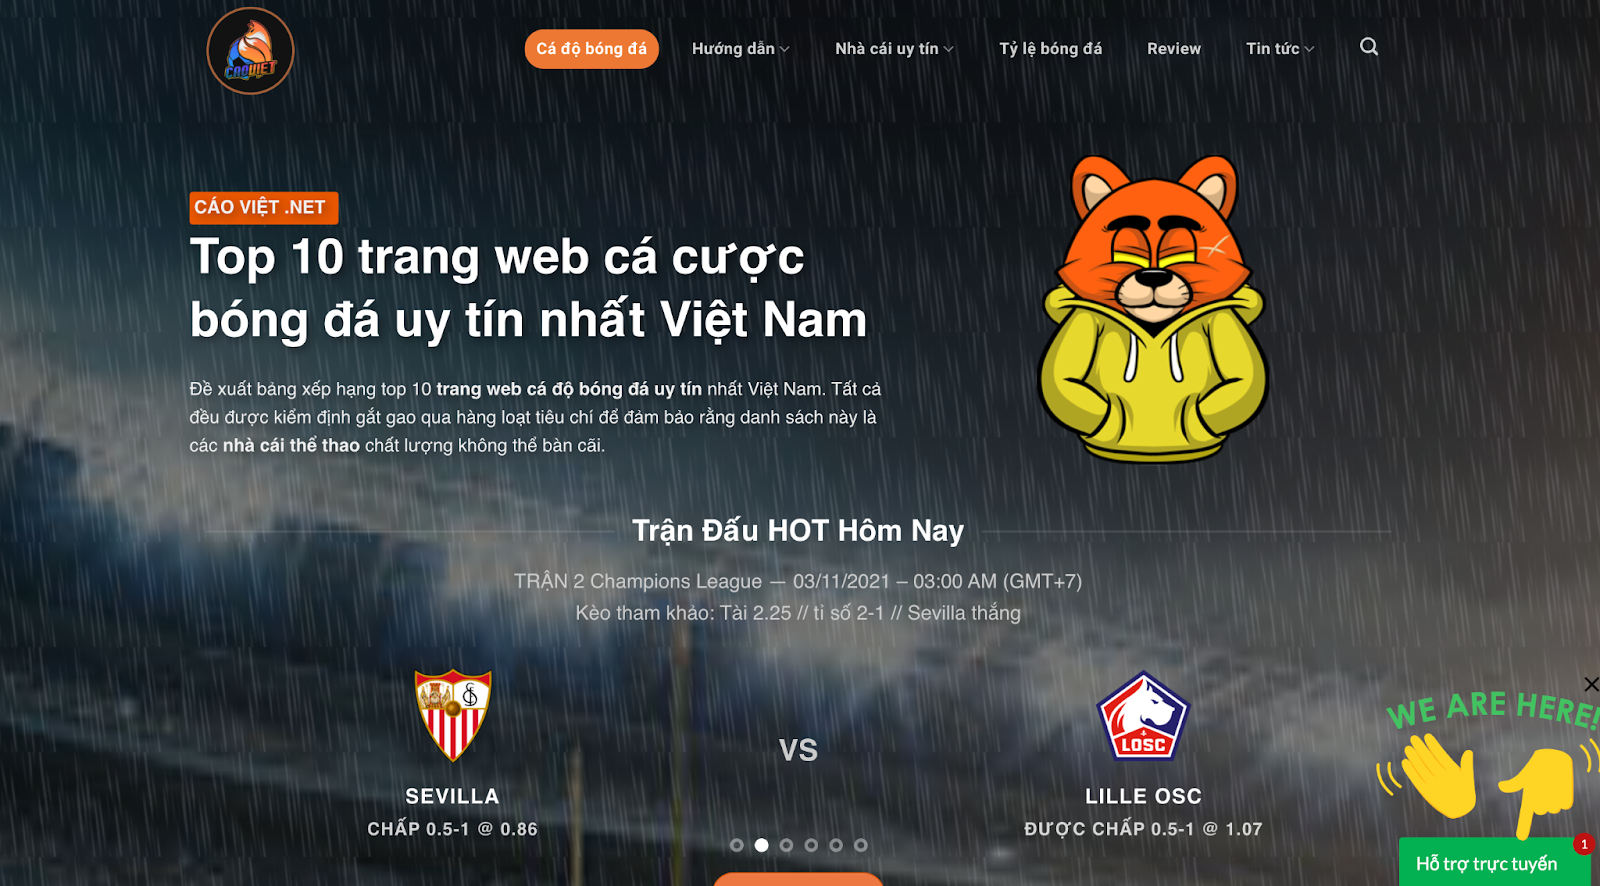 Trải nghiệm website cực đỉnh của xóc đĩa online Cáo Việt Net